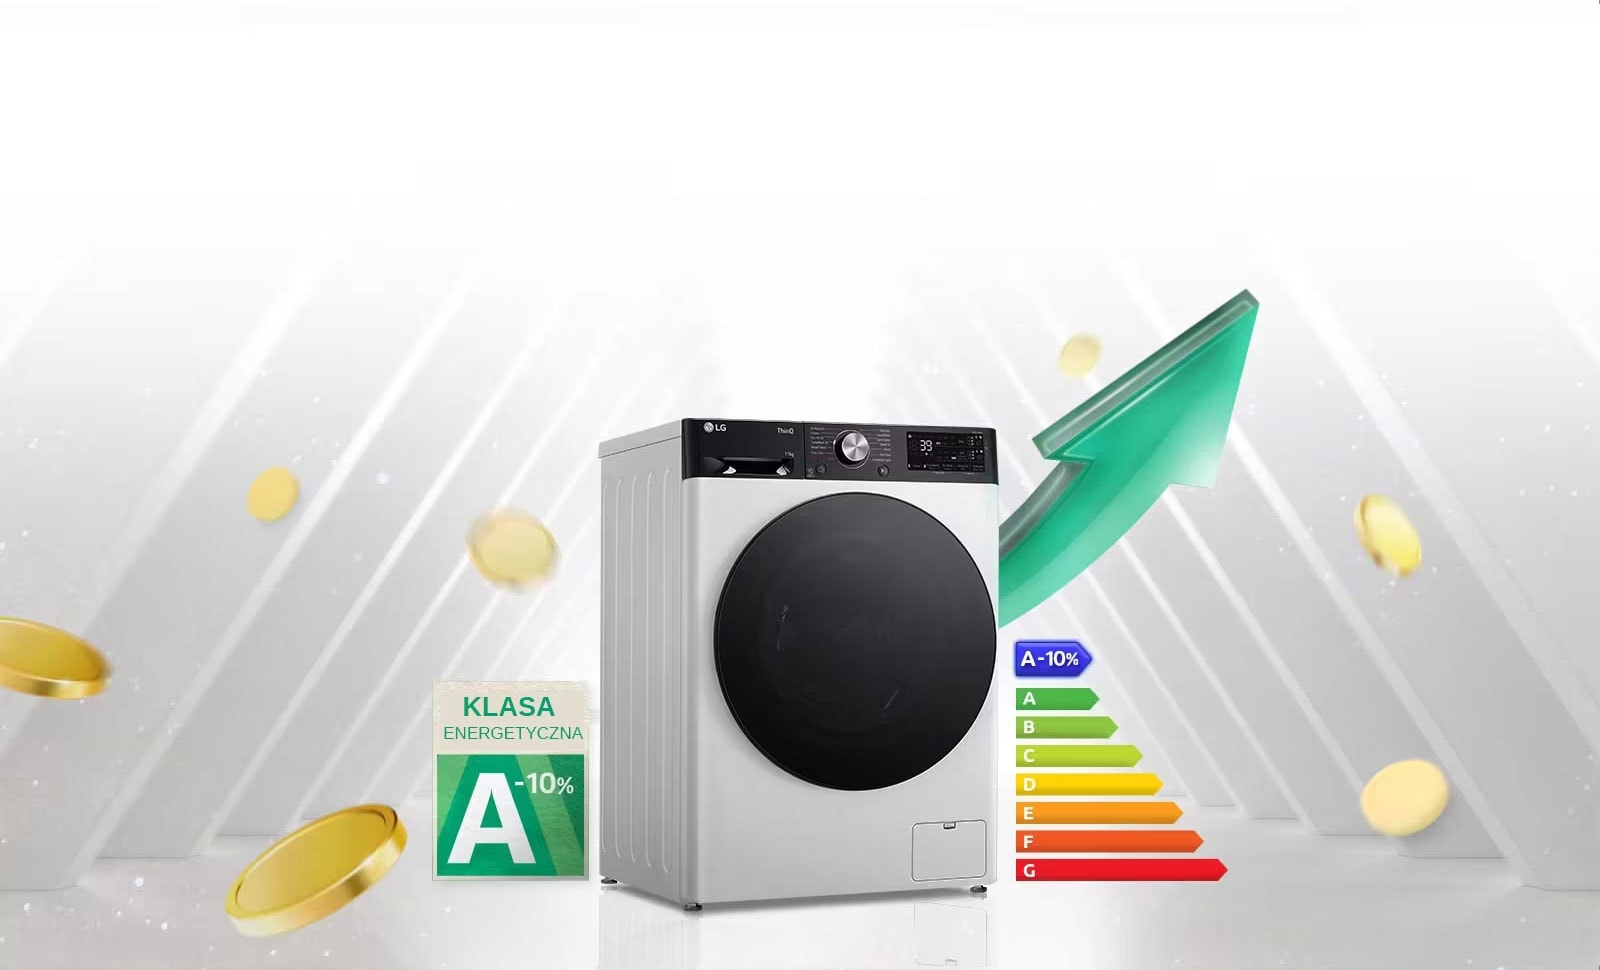 Etykieta energetyczna A-10% jest umieszczona obok pralki.Za pralką pojawia się zielona strzałka skierowana w górę.